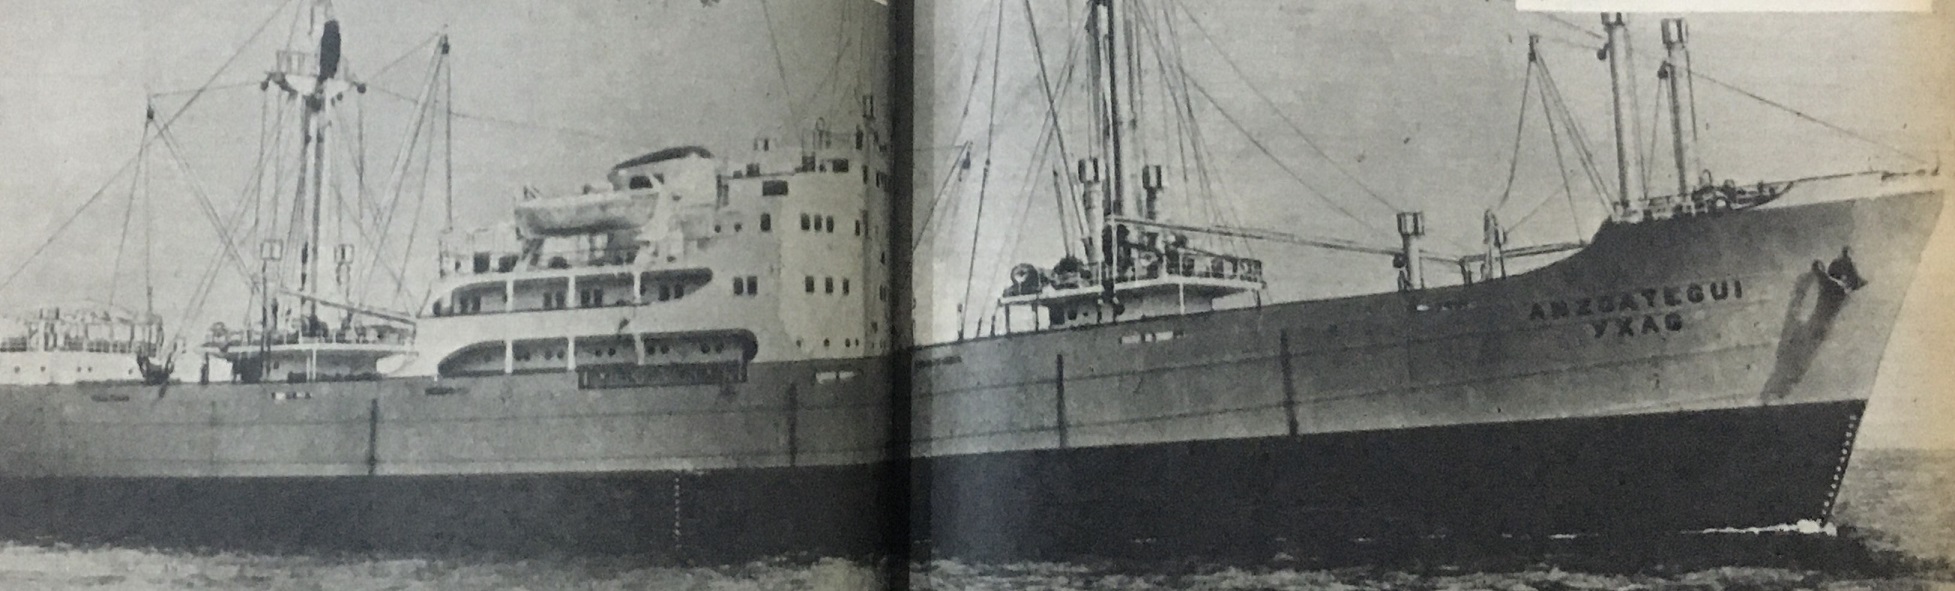 El 12 de febrero de 1963, Día de la Juventud, fue secuestrado en alta mar, por un grupo de guerrilleros, el barco “Anzoátegui”, perteneciente a la Compañía Venezolana de Navegación (CVN)